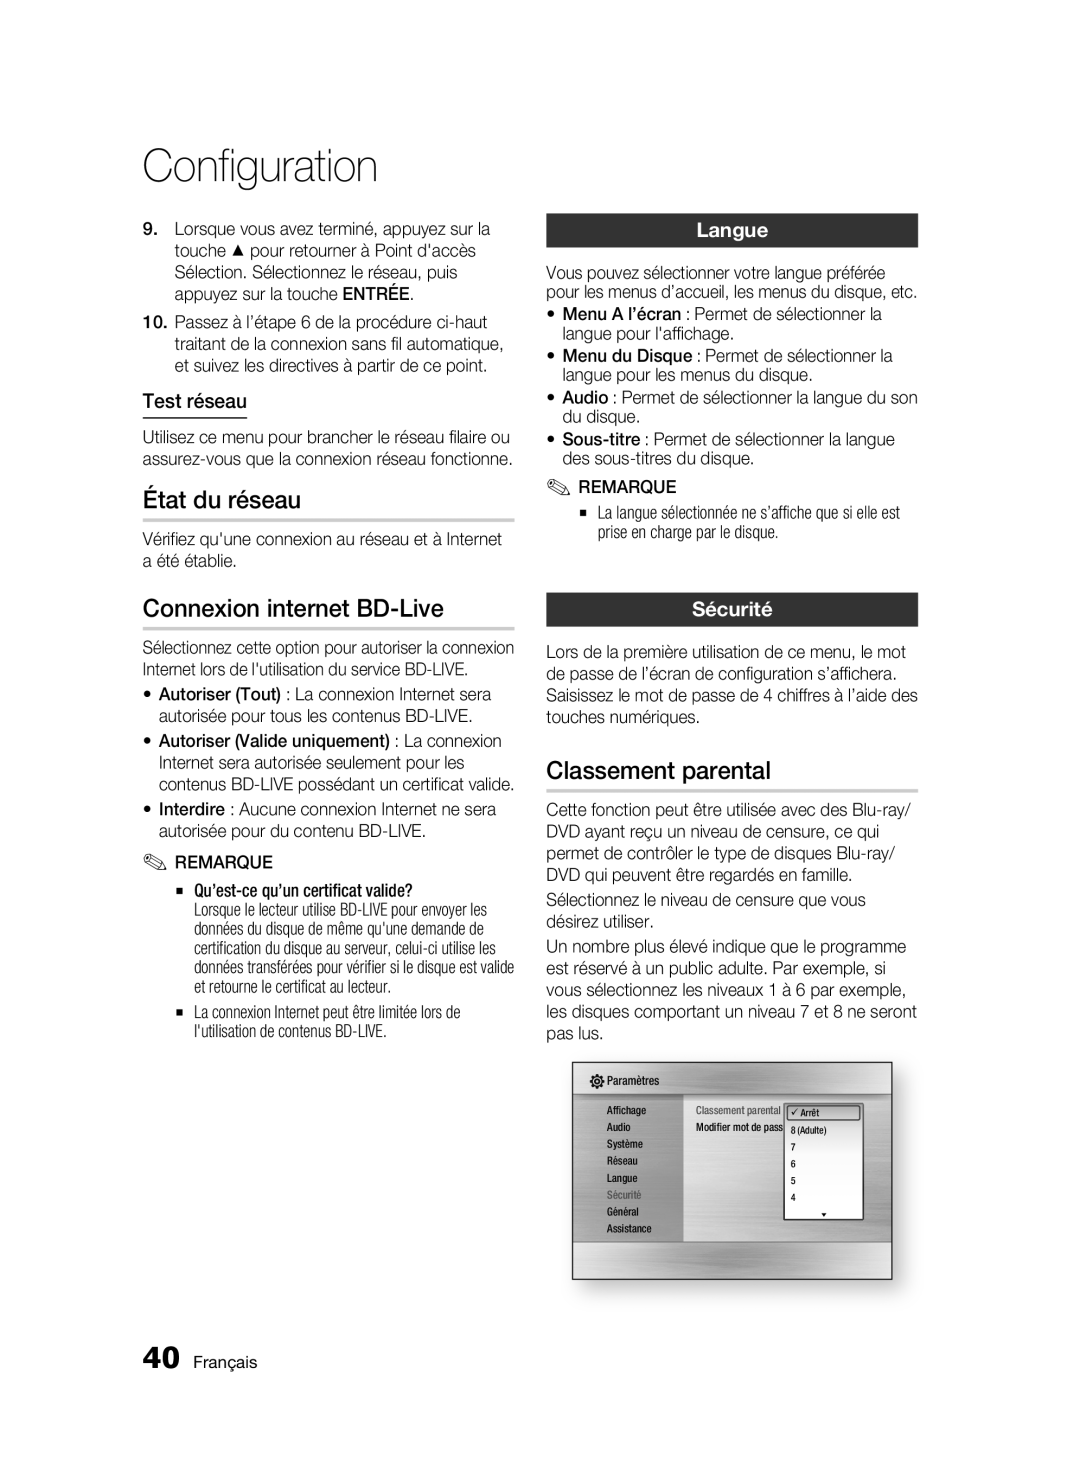 Samsung BD-C6300 user manual État du réseau, Connexion internet BD-Live, Classement parental, Test réseau, Langue, Sécurité 